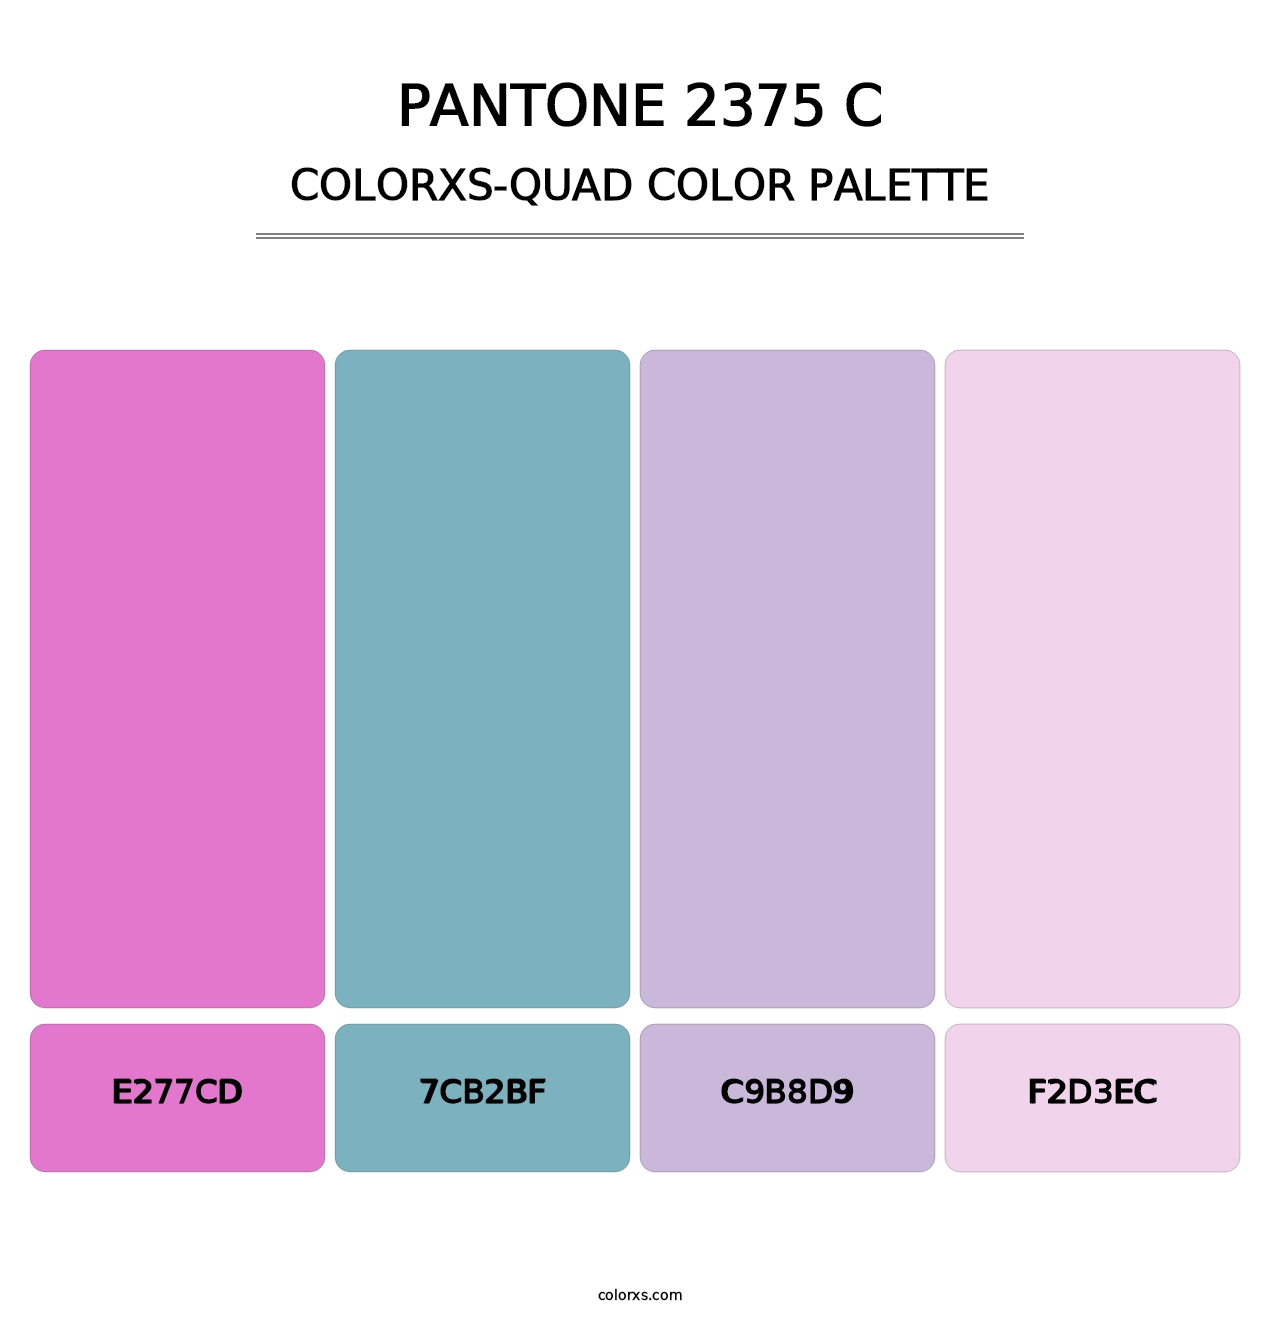 PANTONE 2375 C - Colorxs Quad Palette